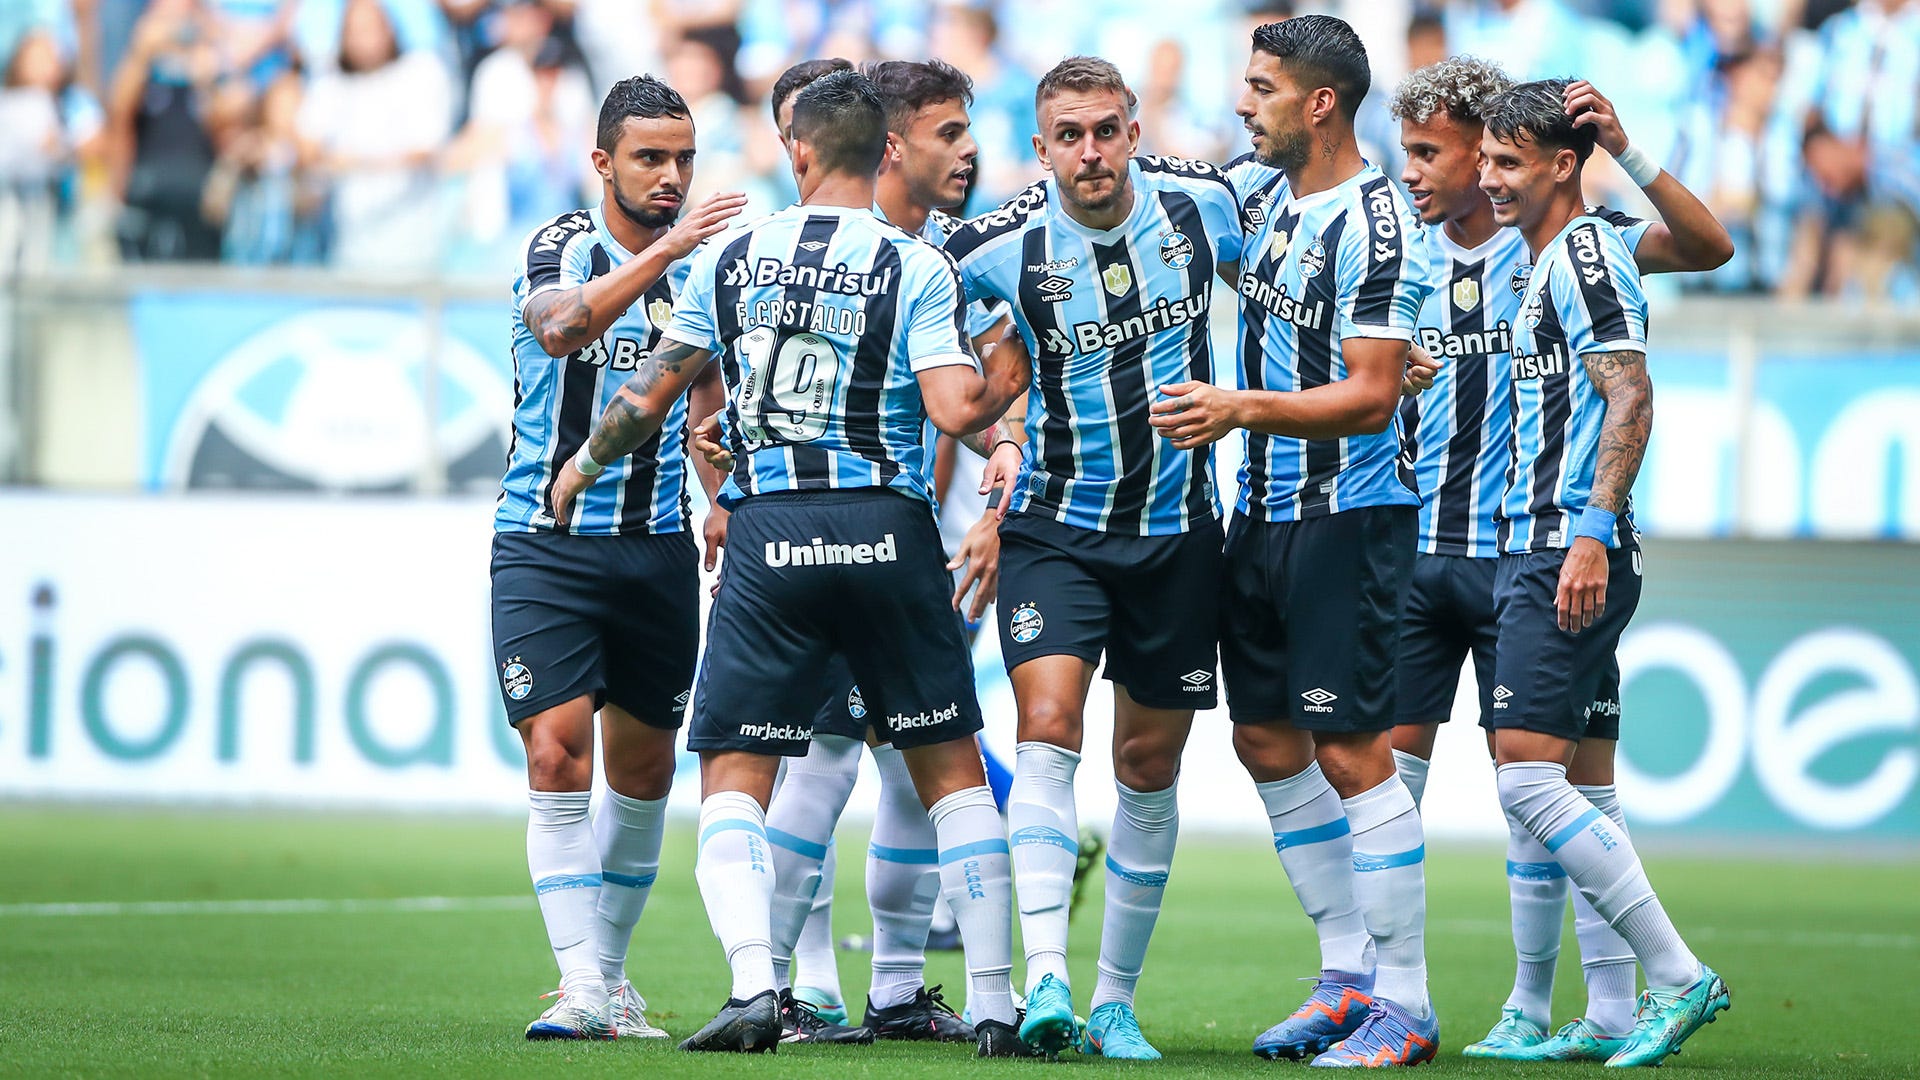 Grêmio x Náutico: Um confronto emocionante no futebol brasileiro